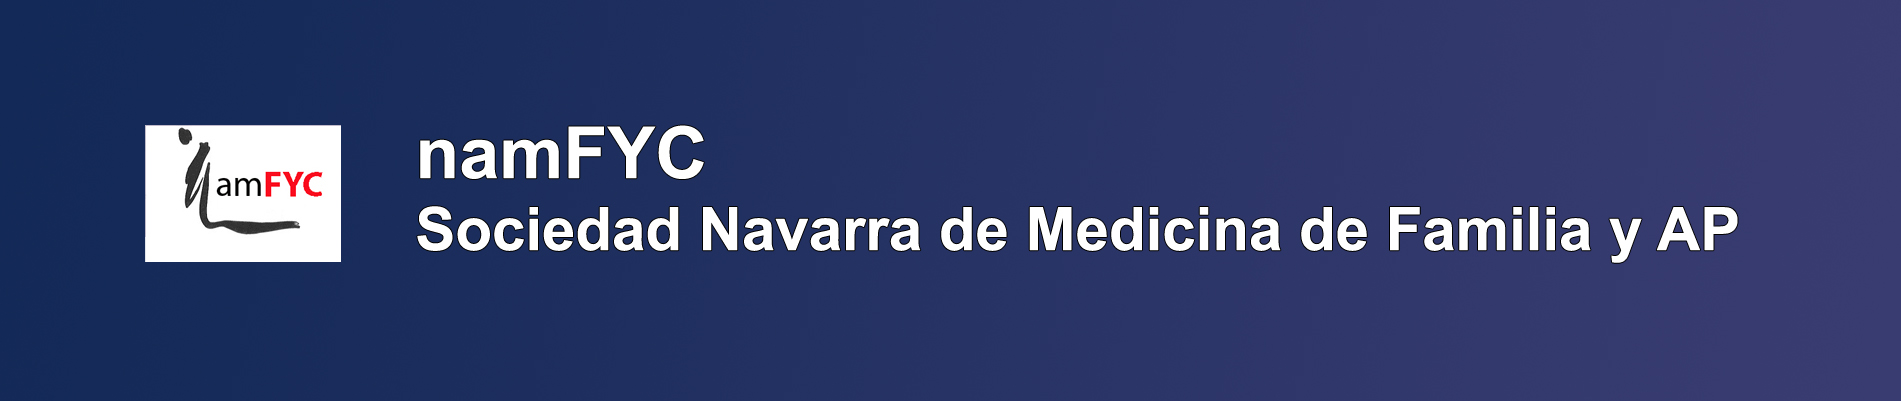 namFYC- Sociedad Navarra de Medicina de Familia y AP